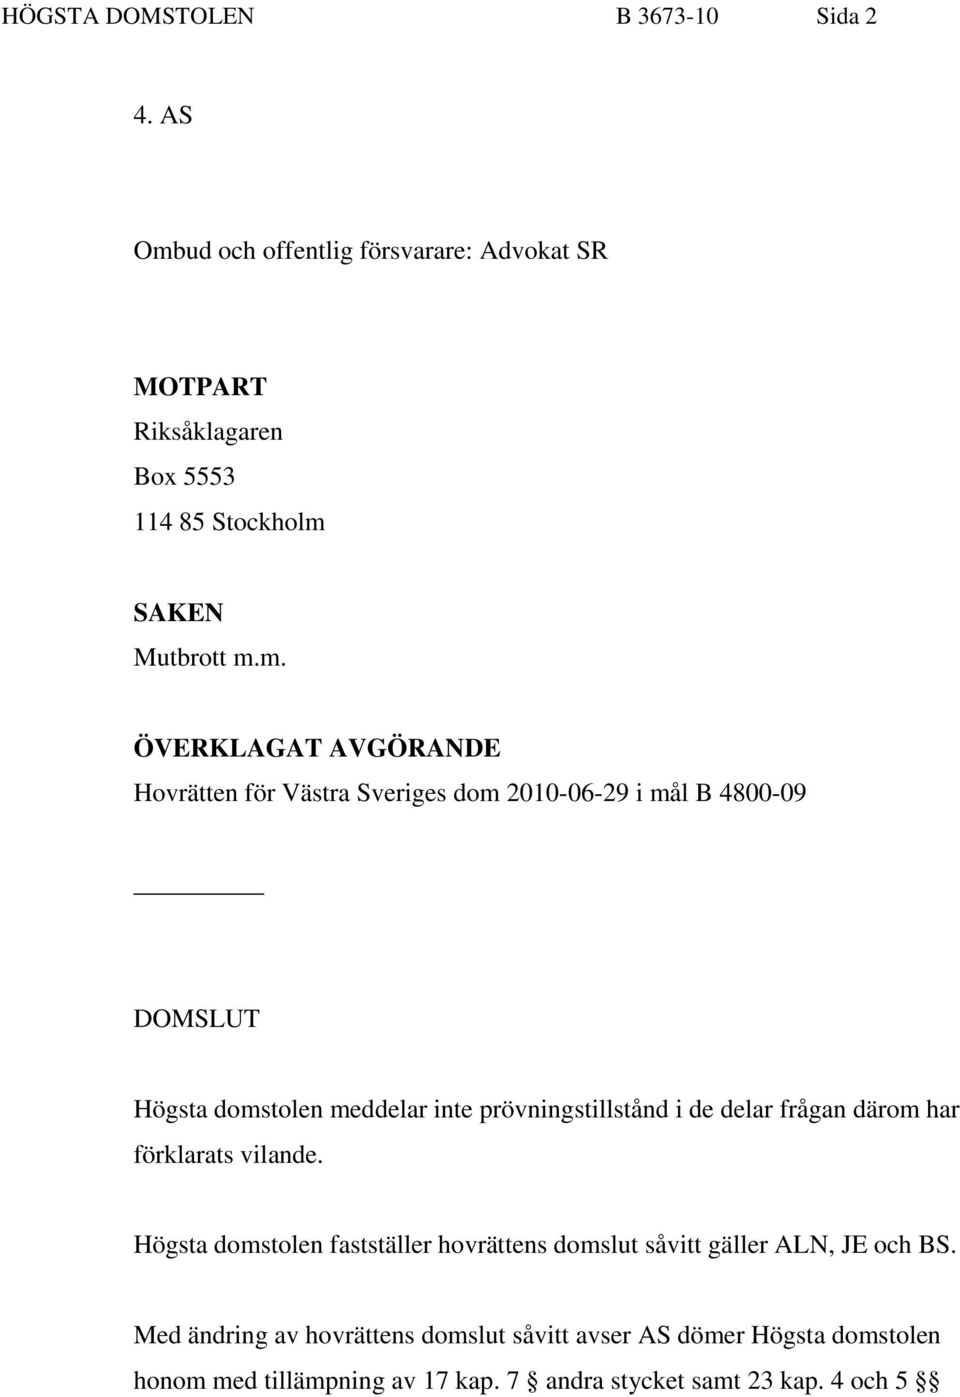 ud och offentlig försvarare: Advokat SR MOTPART Riksåklagaren Box 5553 114 85 Stockholm 